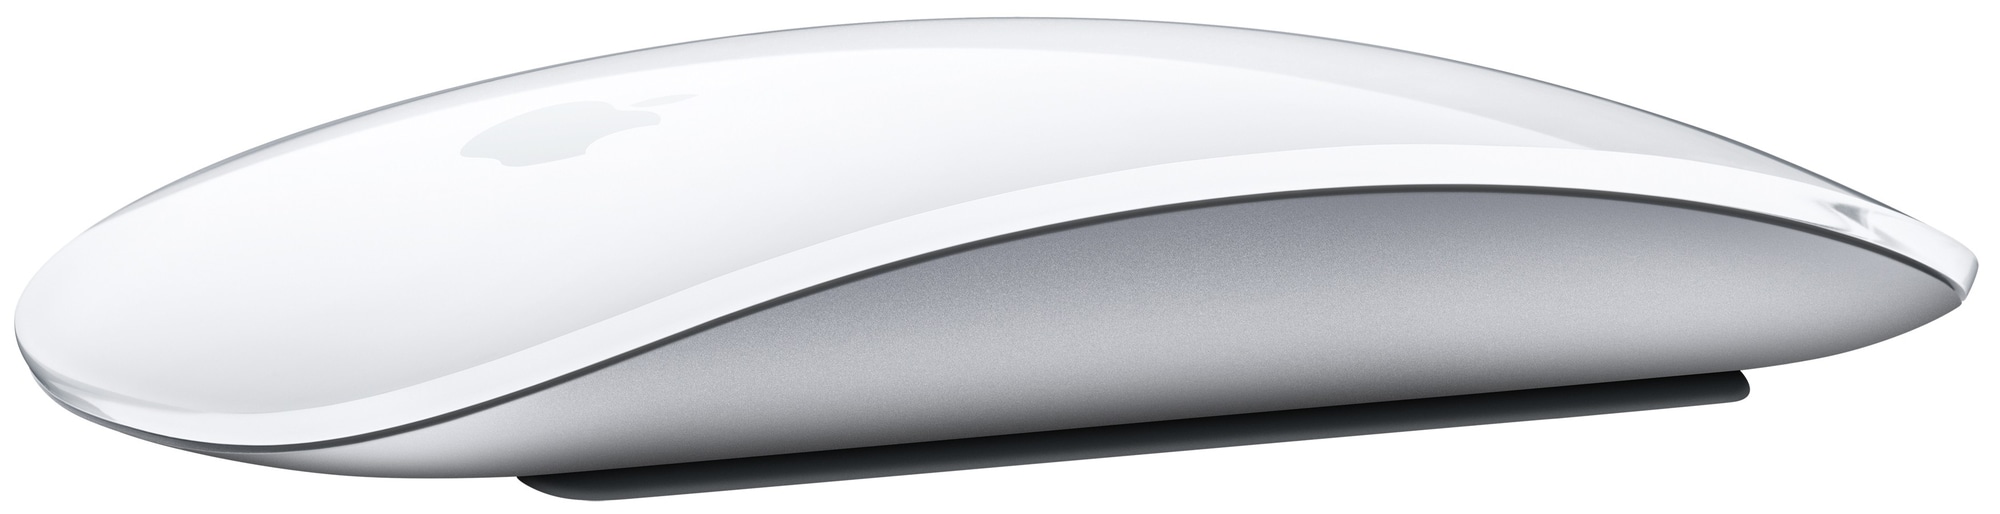 Apple Magic Mouse 2 - PC-mus - Elkjøp